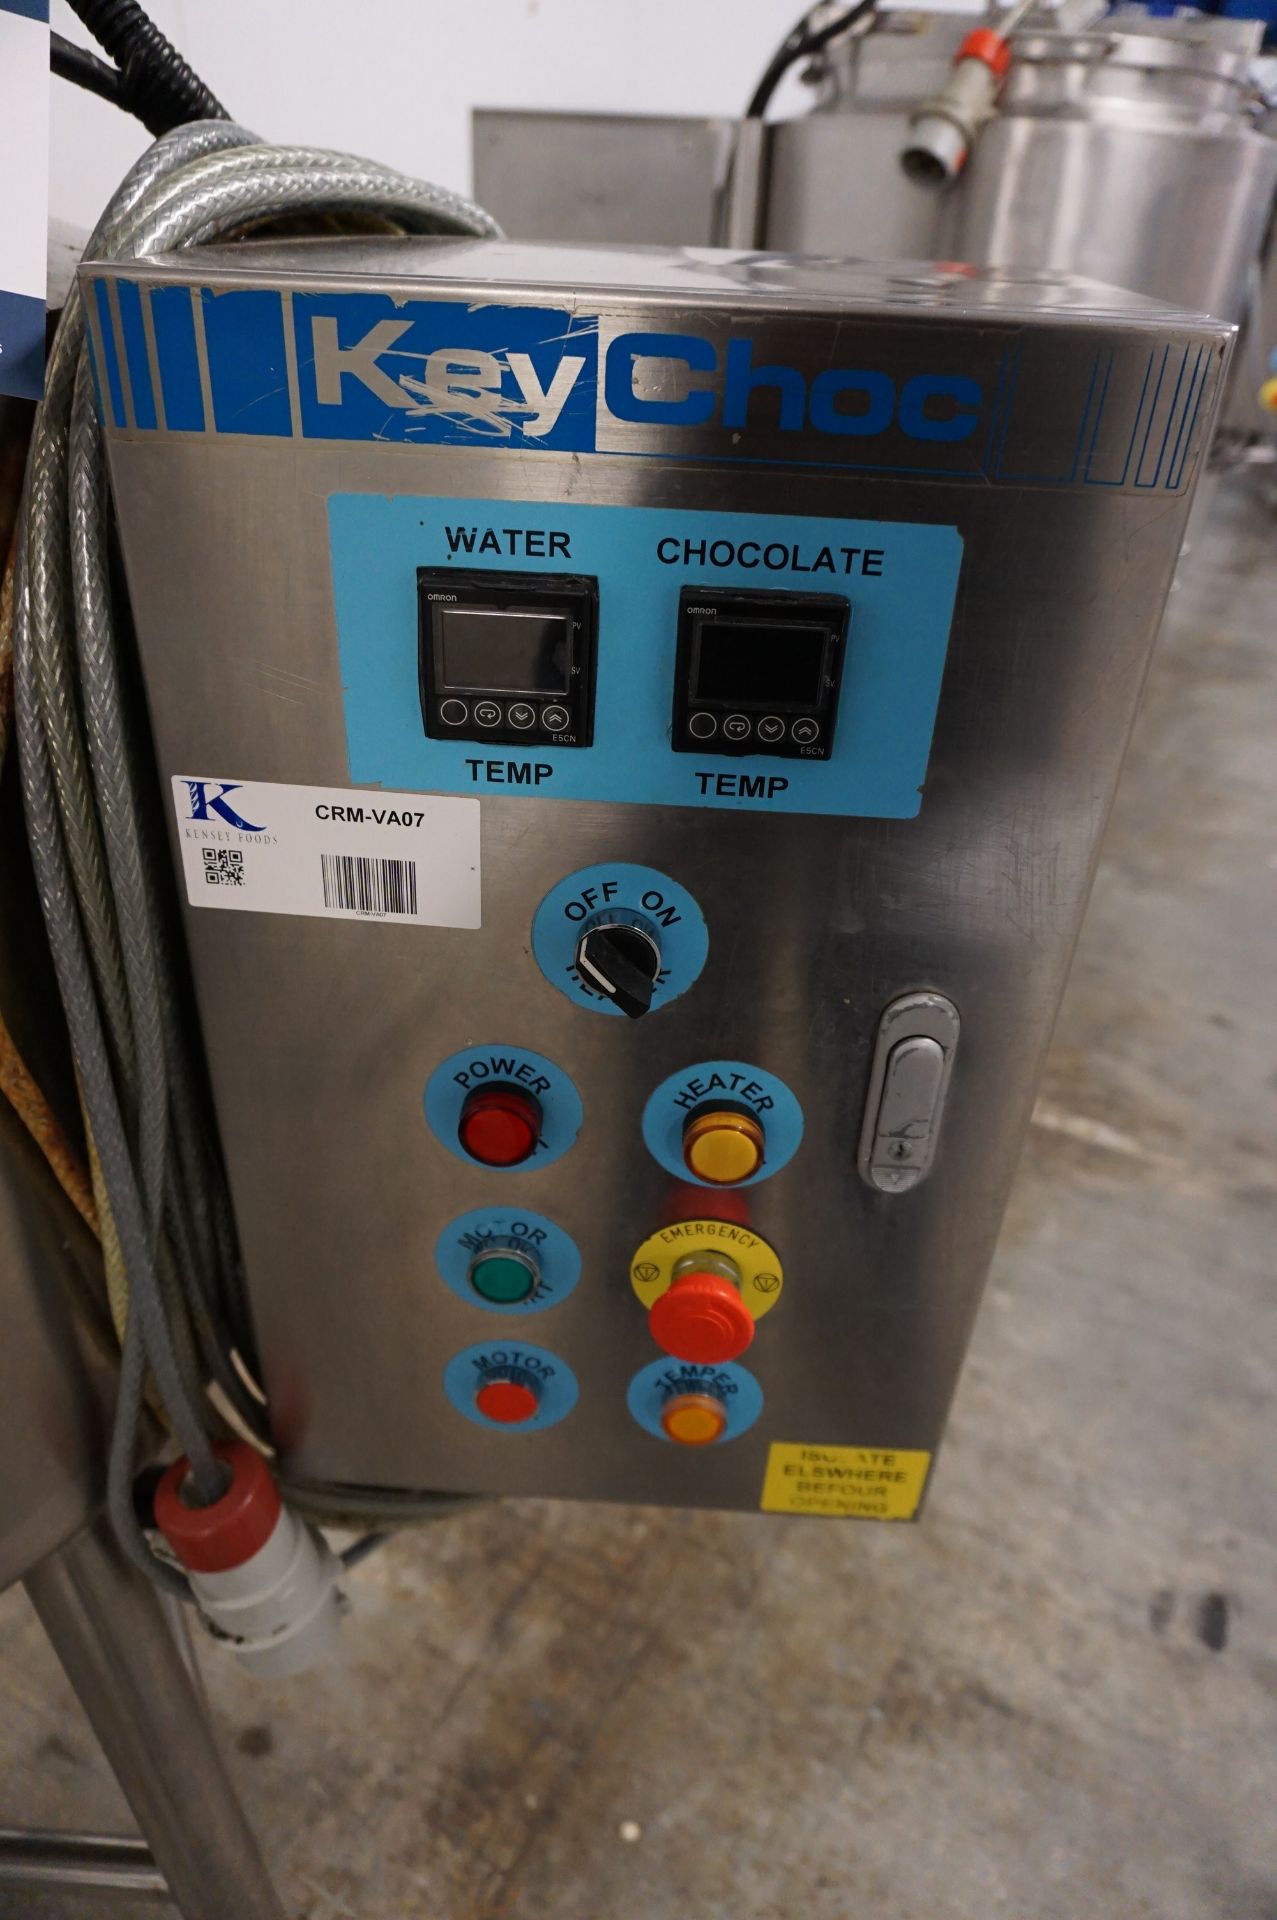 KeyChoc, chocolate melting tank with on station controls - Image 2 of 4